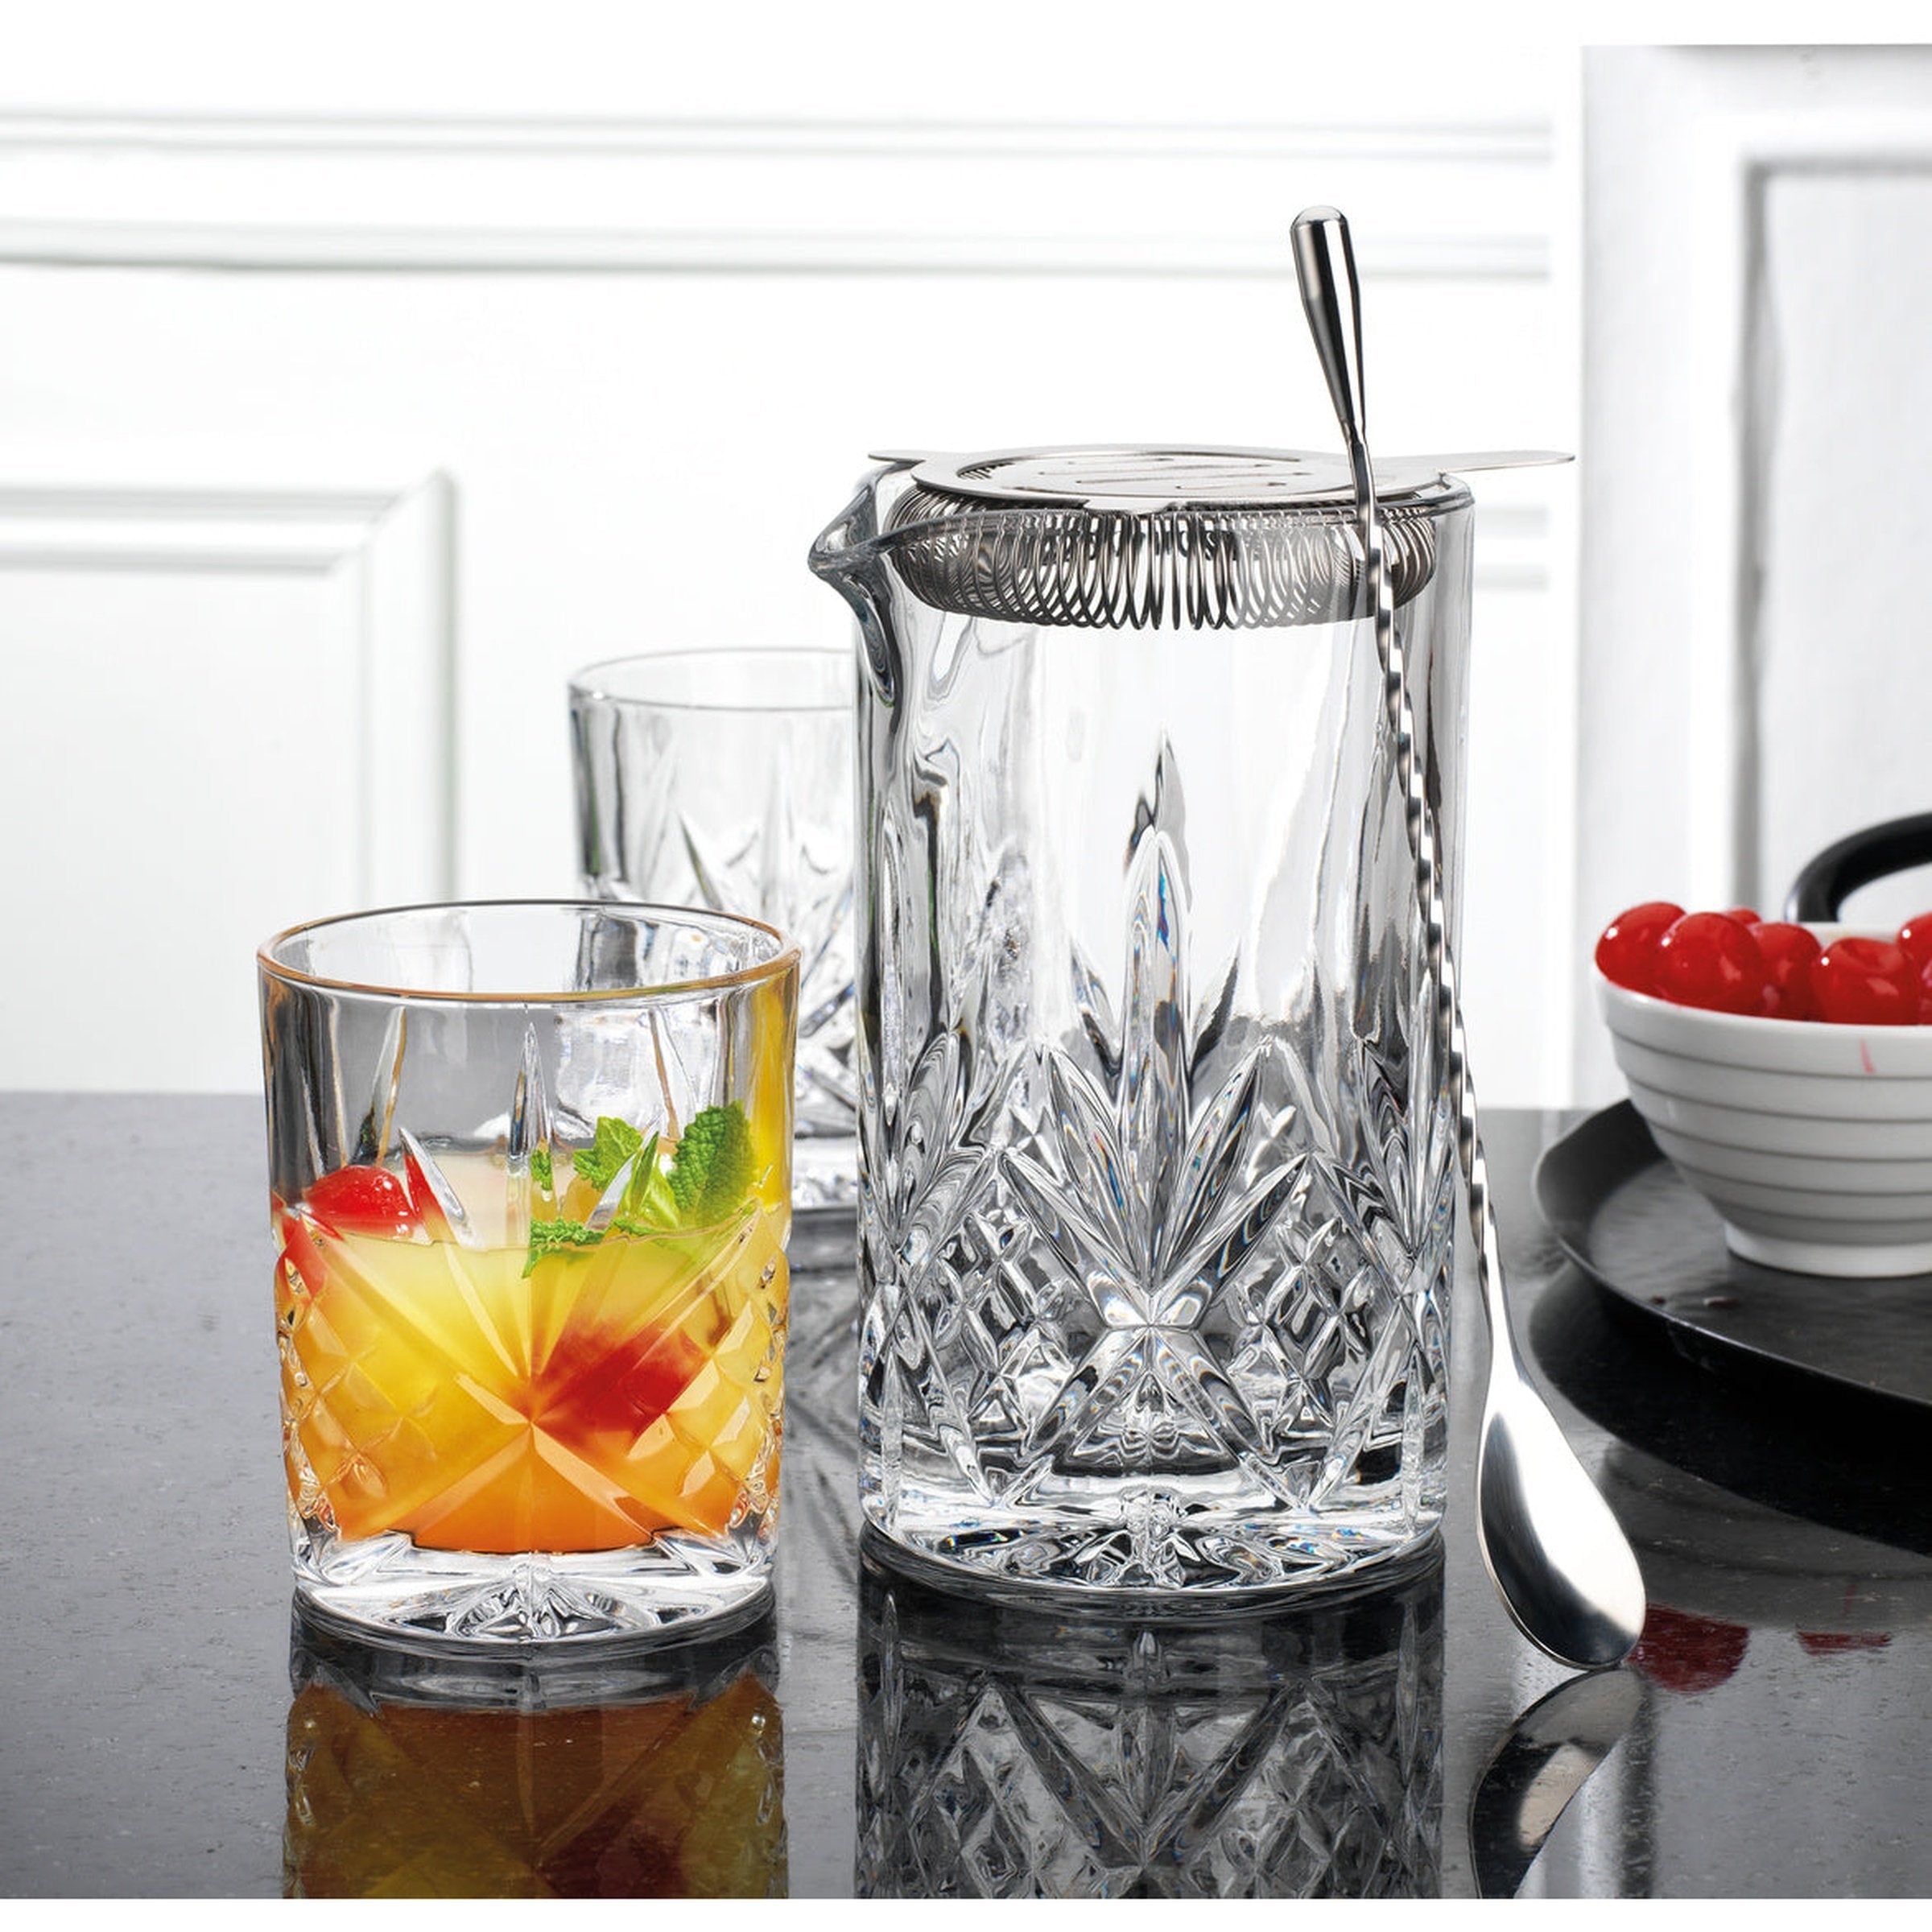 Godinger, Dining, Godinger Dublin Pattern Crystal Martini Glasses Set Of  5